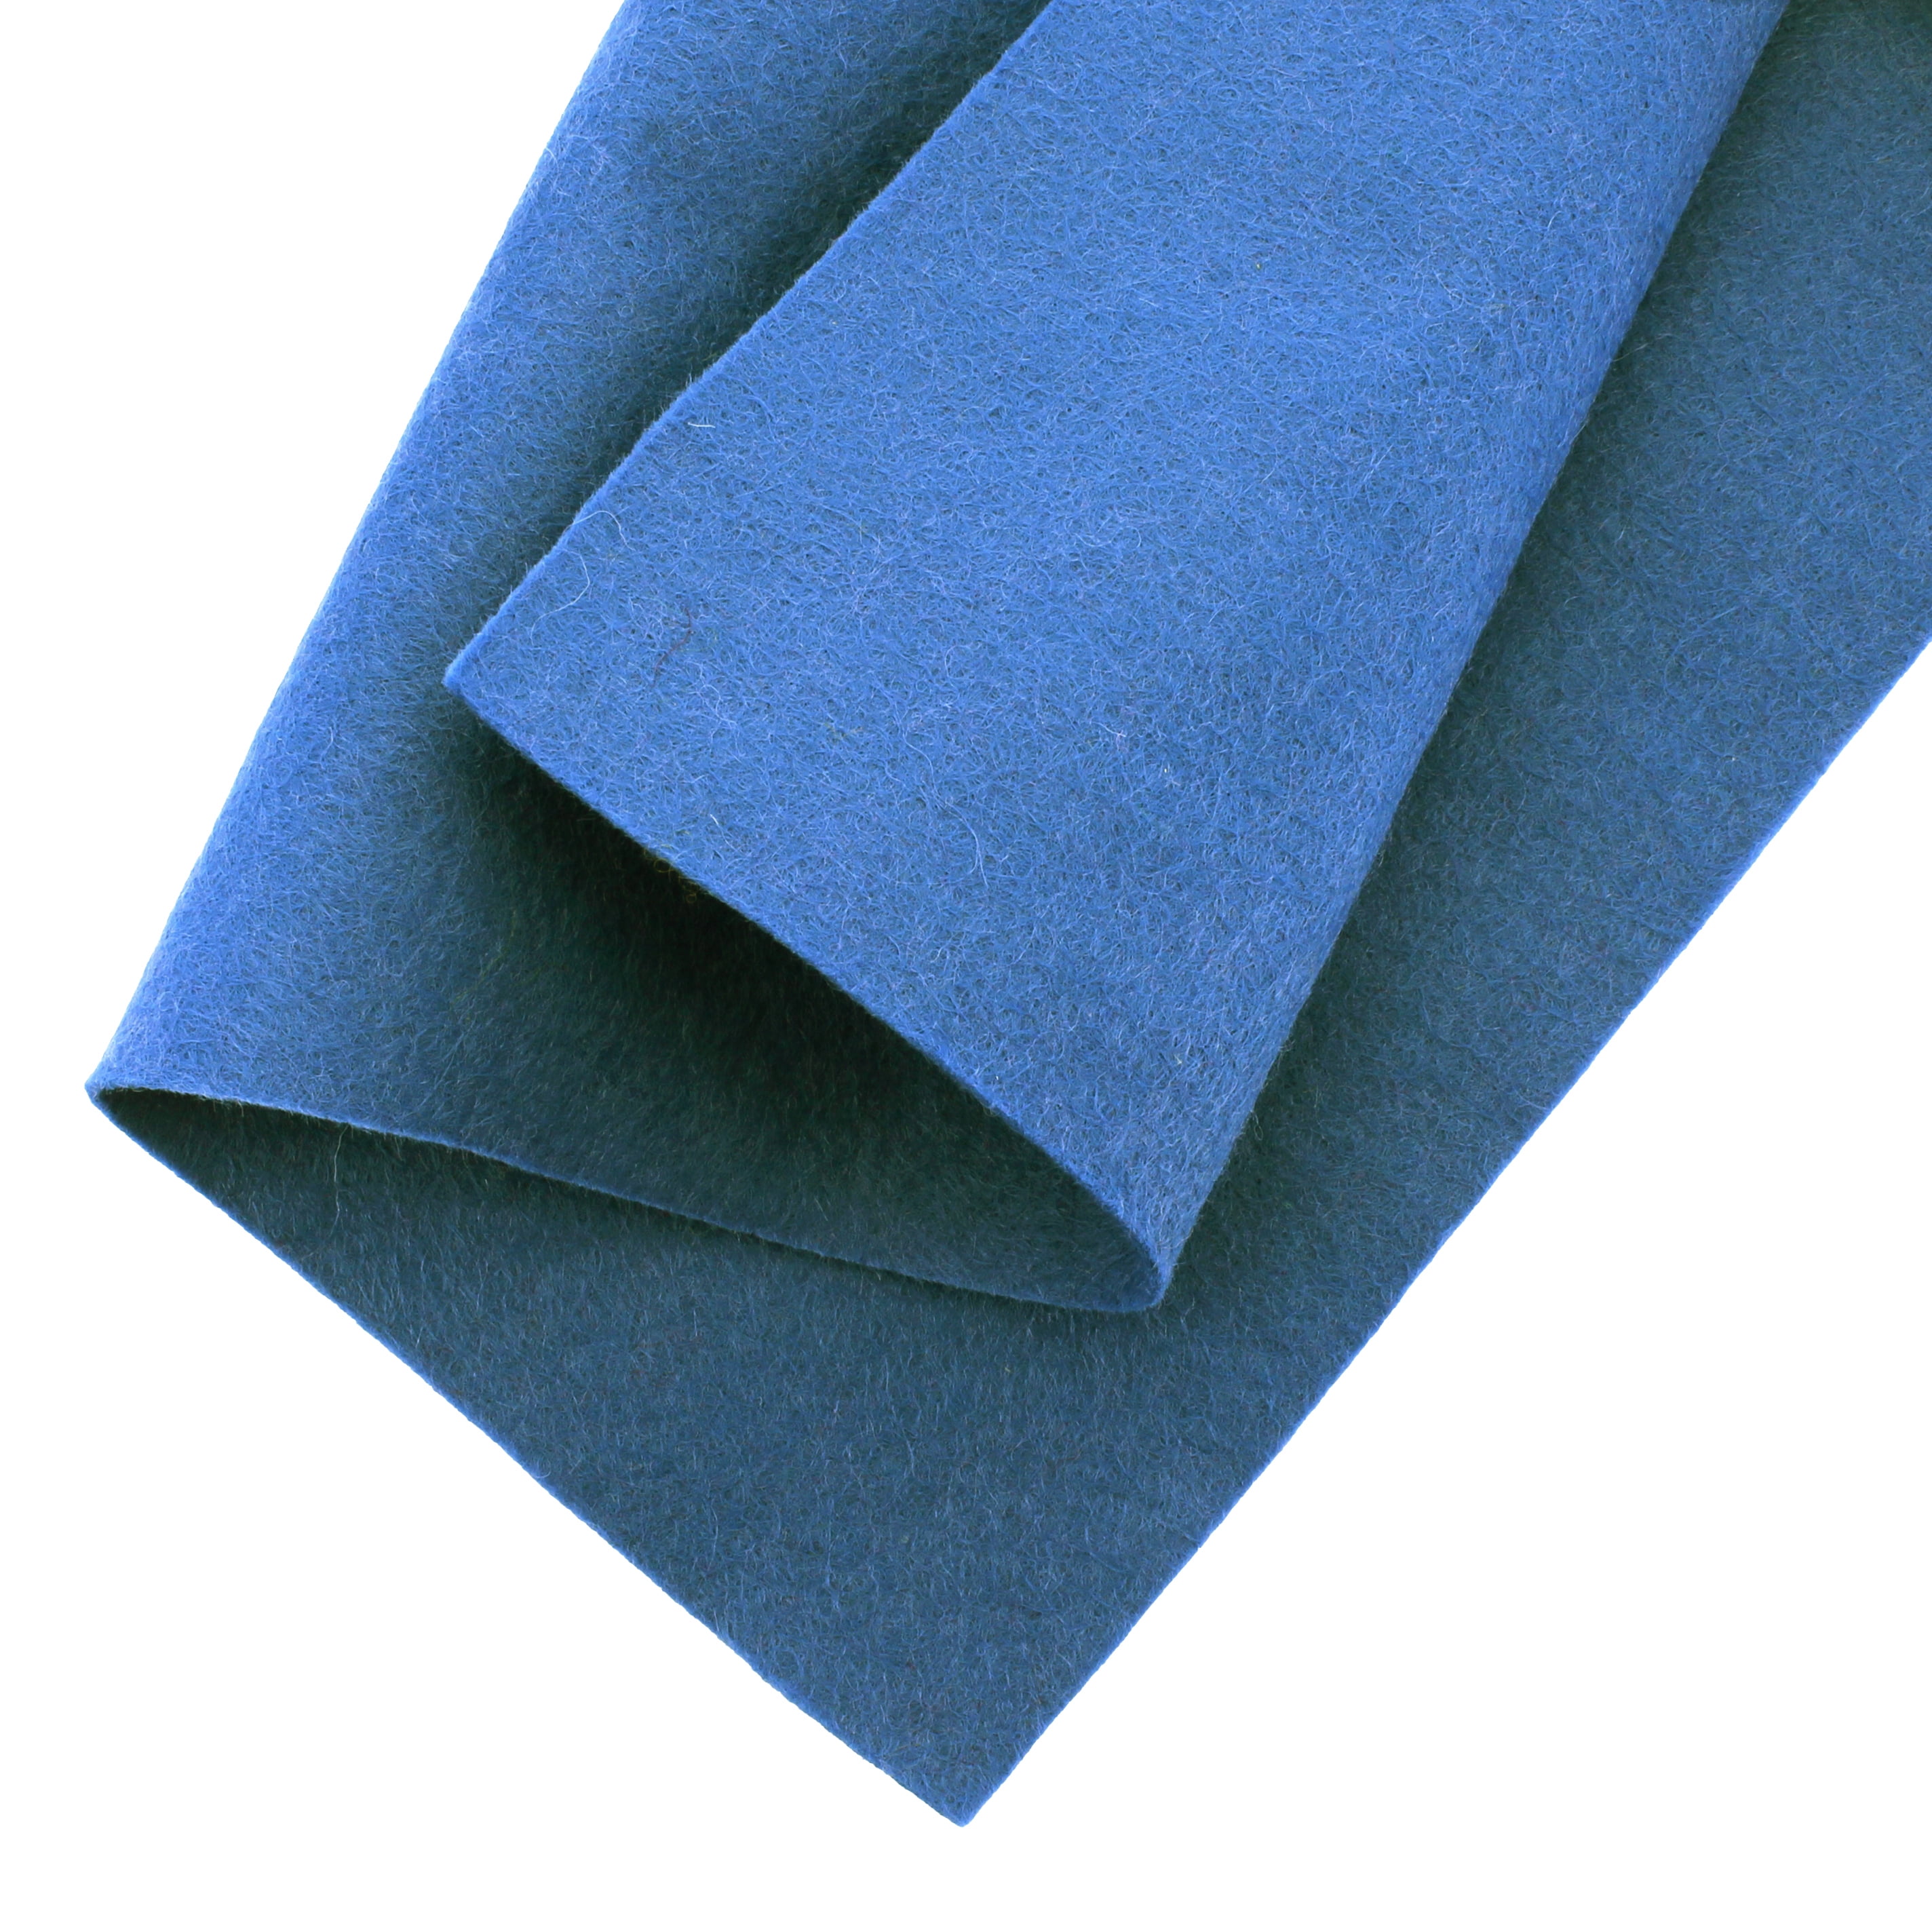 Moss Wool Felt Sheet, Blue Wool Felt